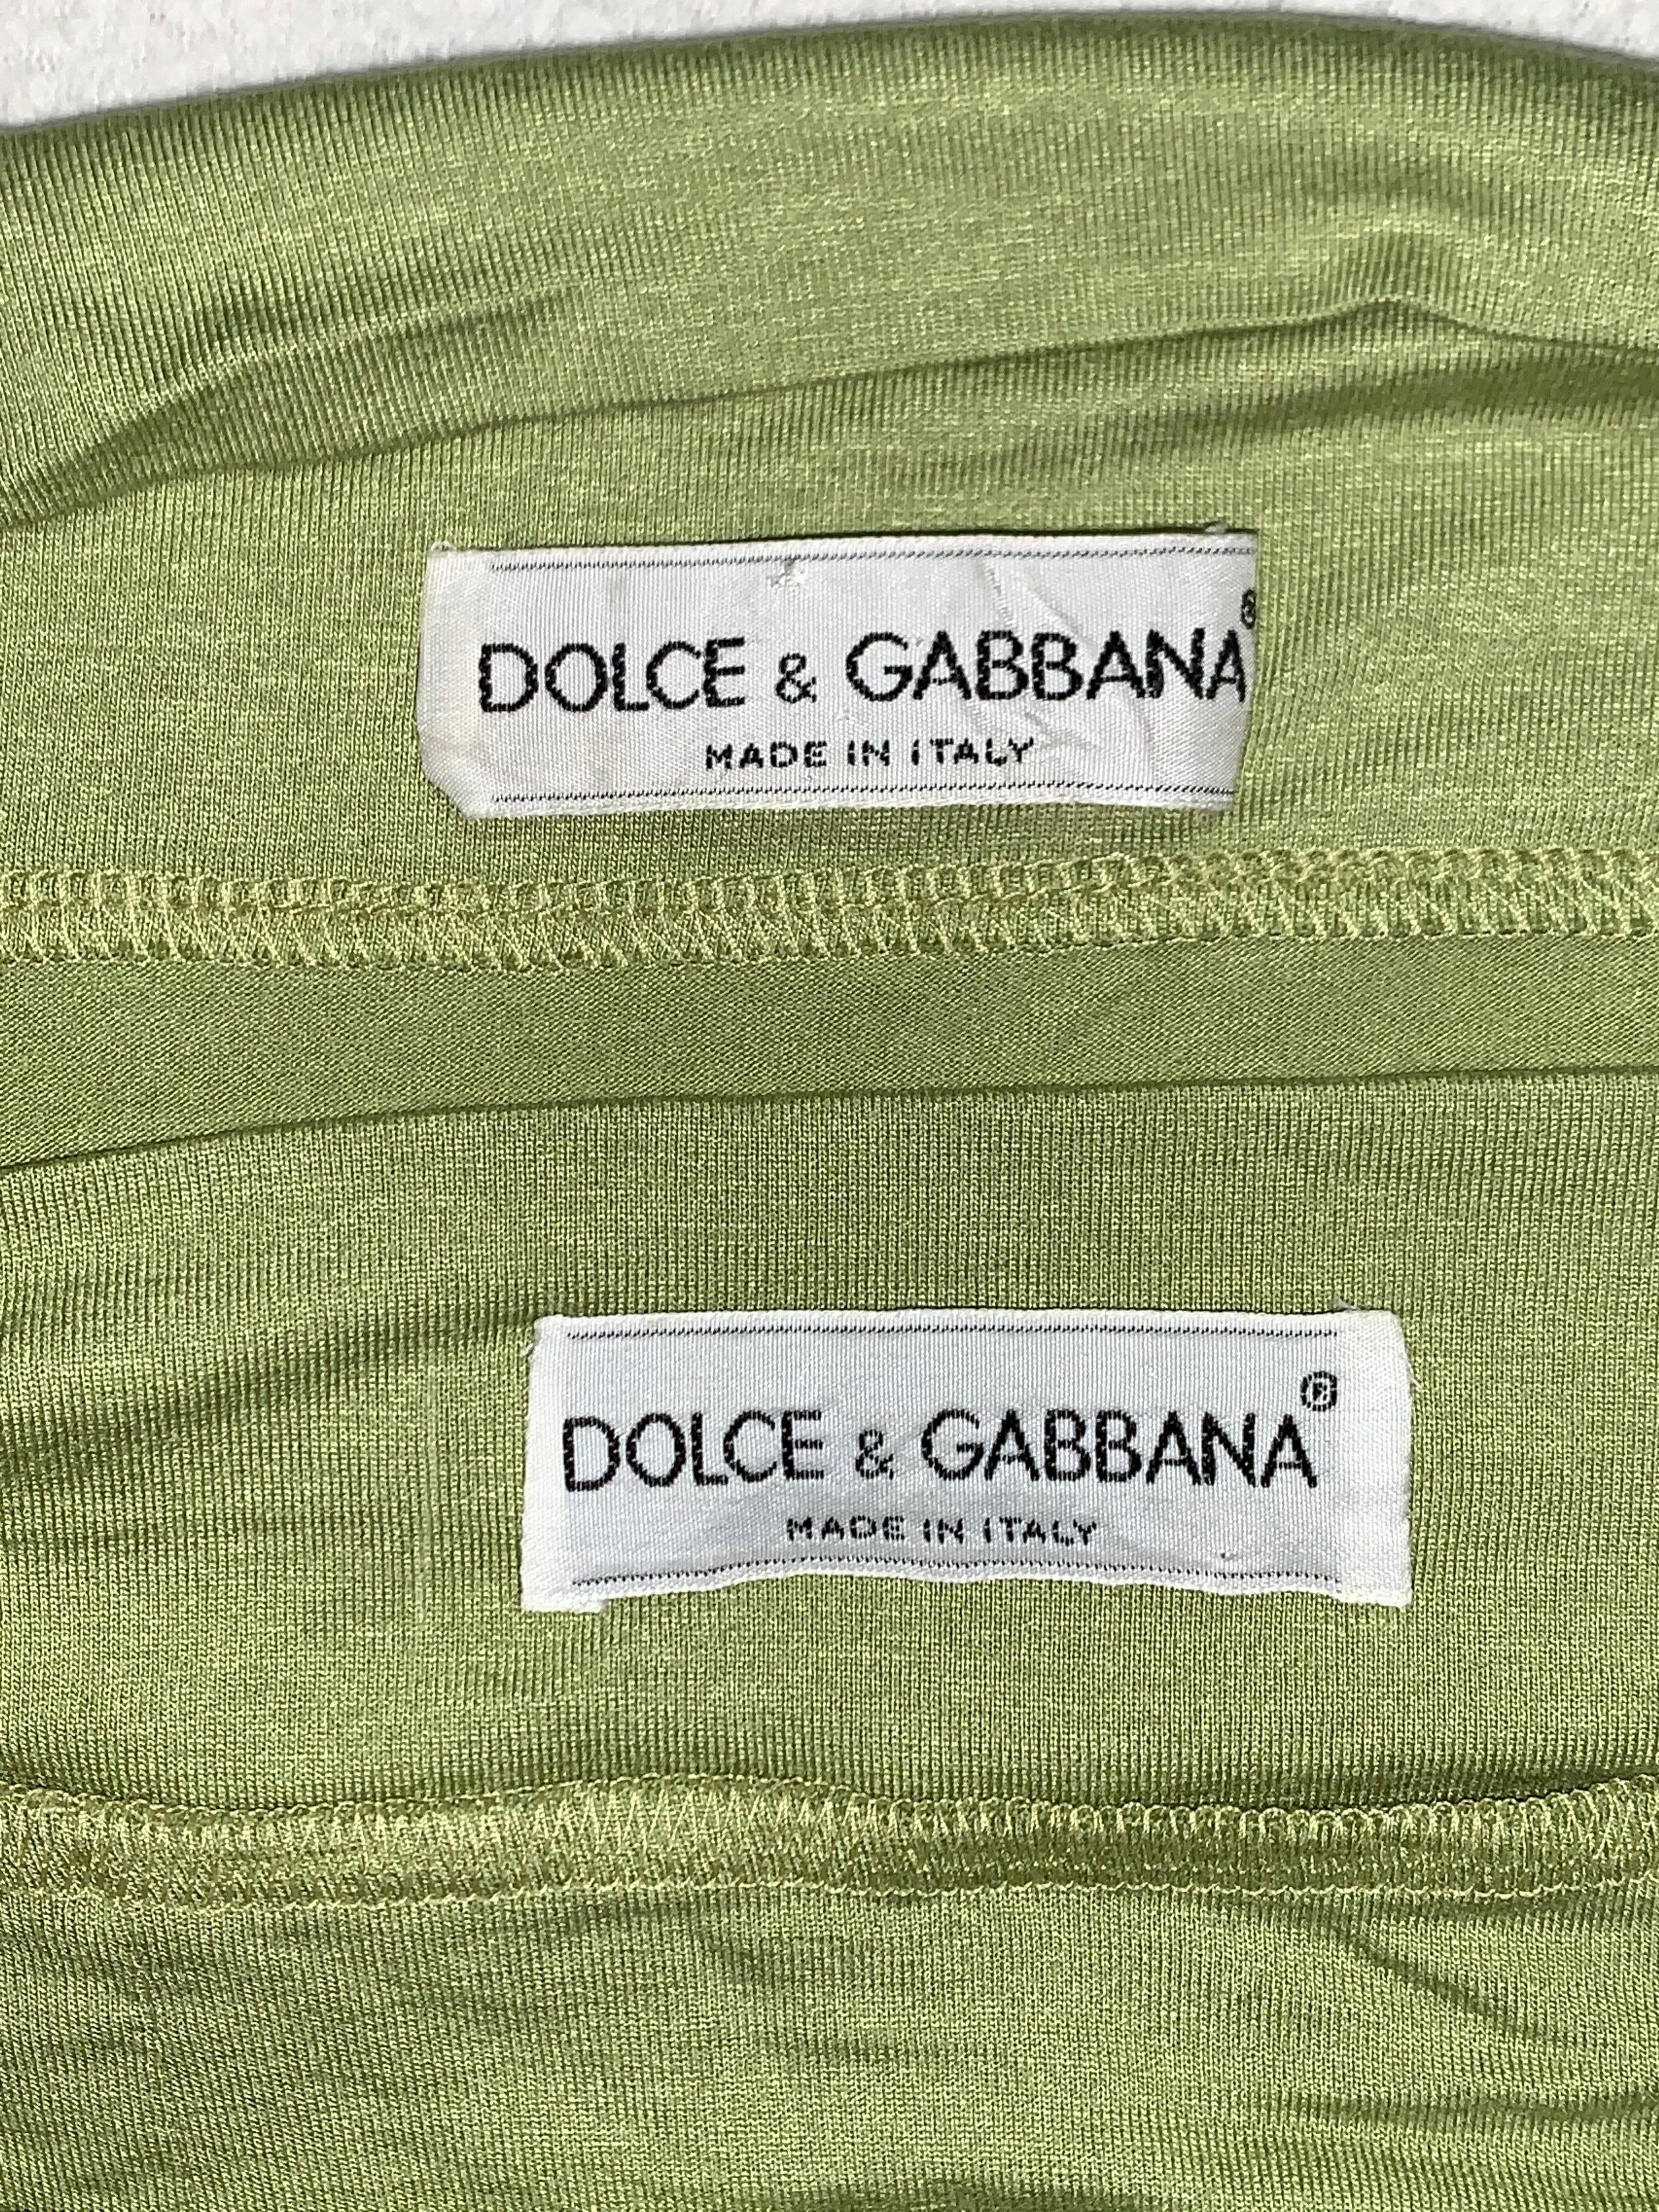 S/S 1991 Dolce & Gabbana Runway Green Off Shoulder Crop Top & High Waist Skirt 1